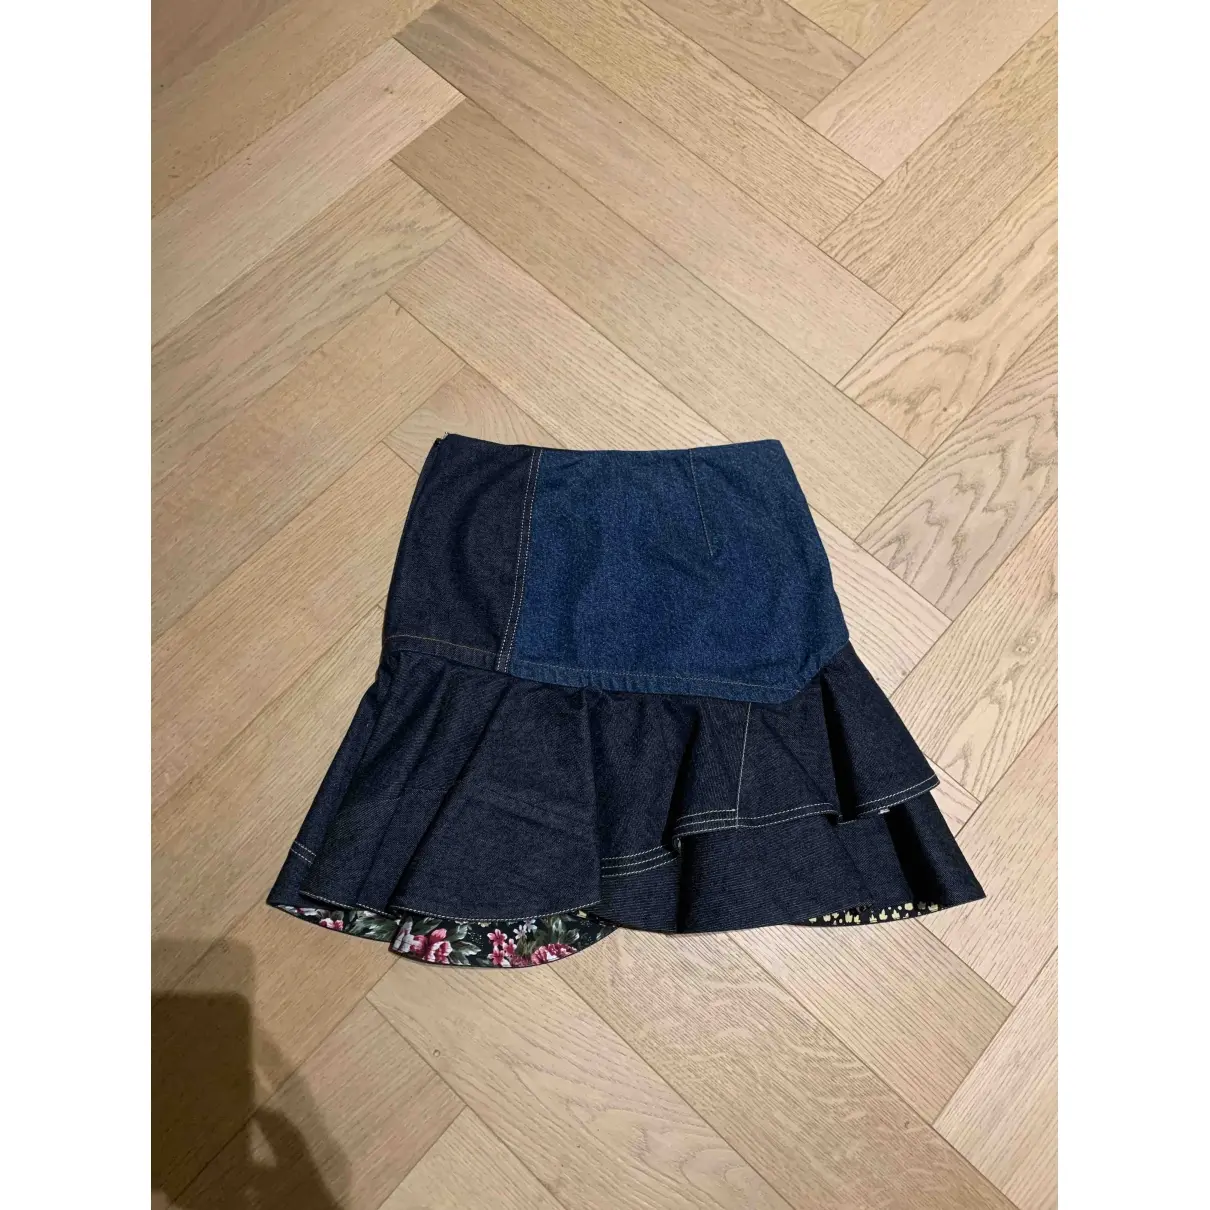 Alexander McQueen Mini skirt for sale